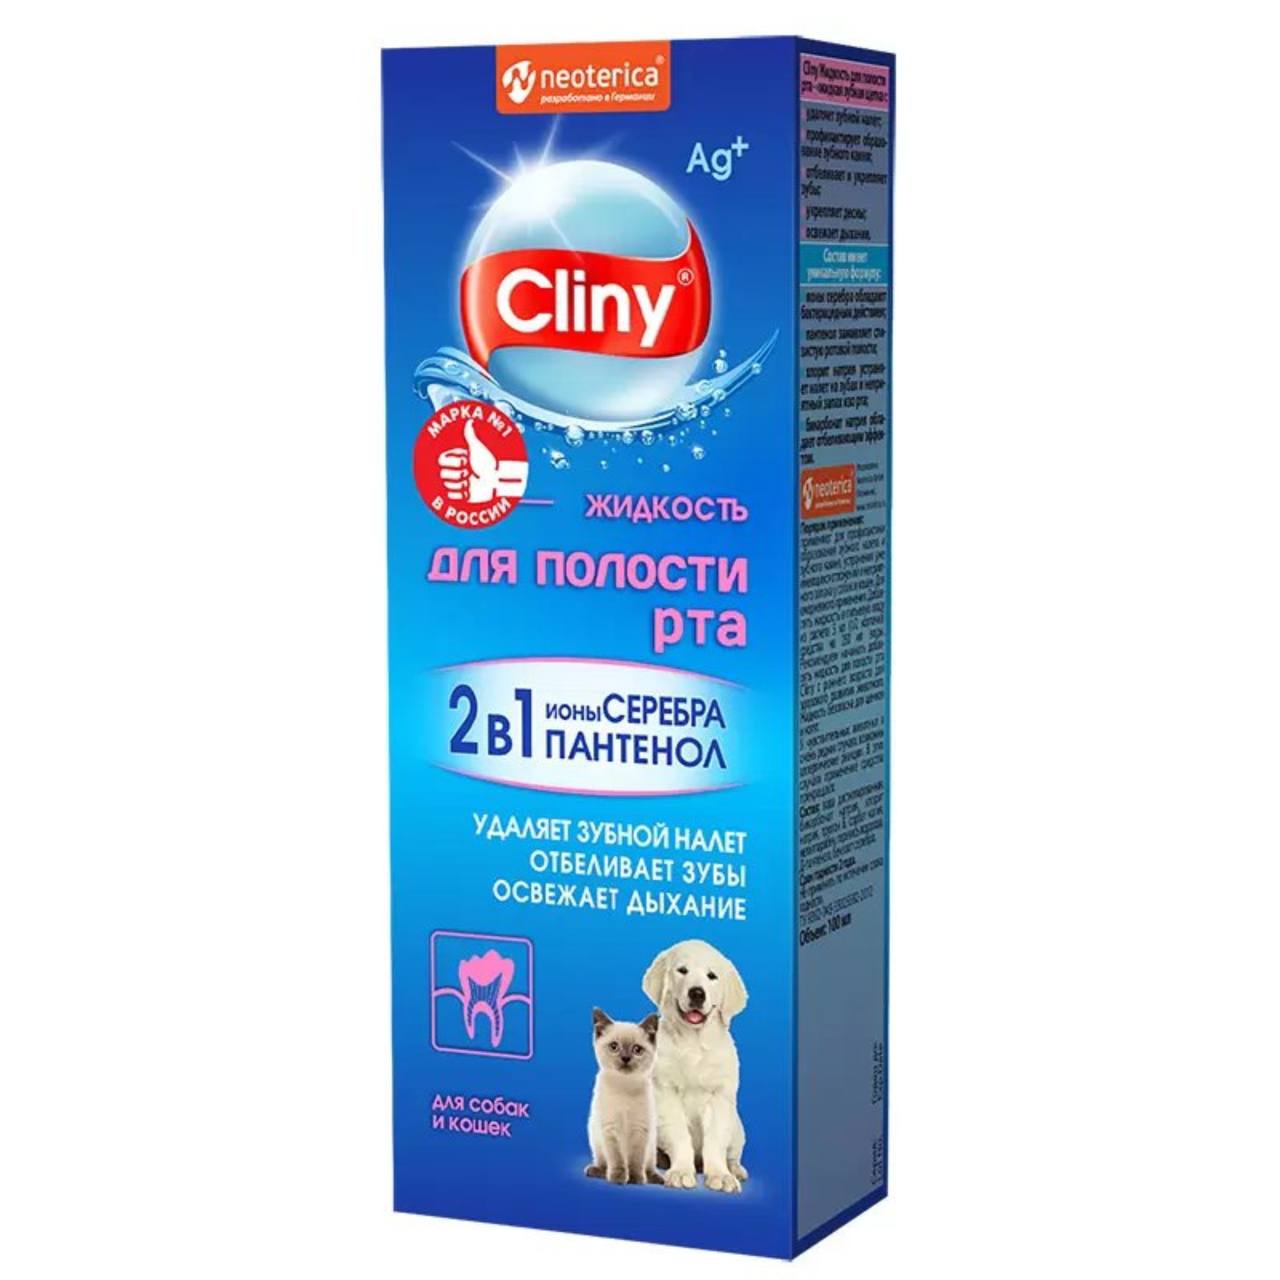 Жидкость Cliny для полости рта с ионами серебра д/кош и соб 100 мл